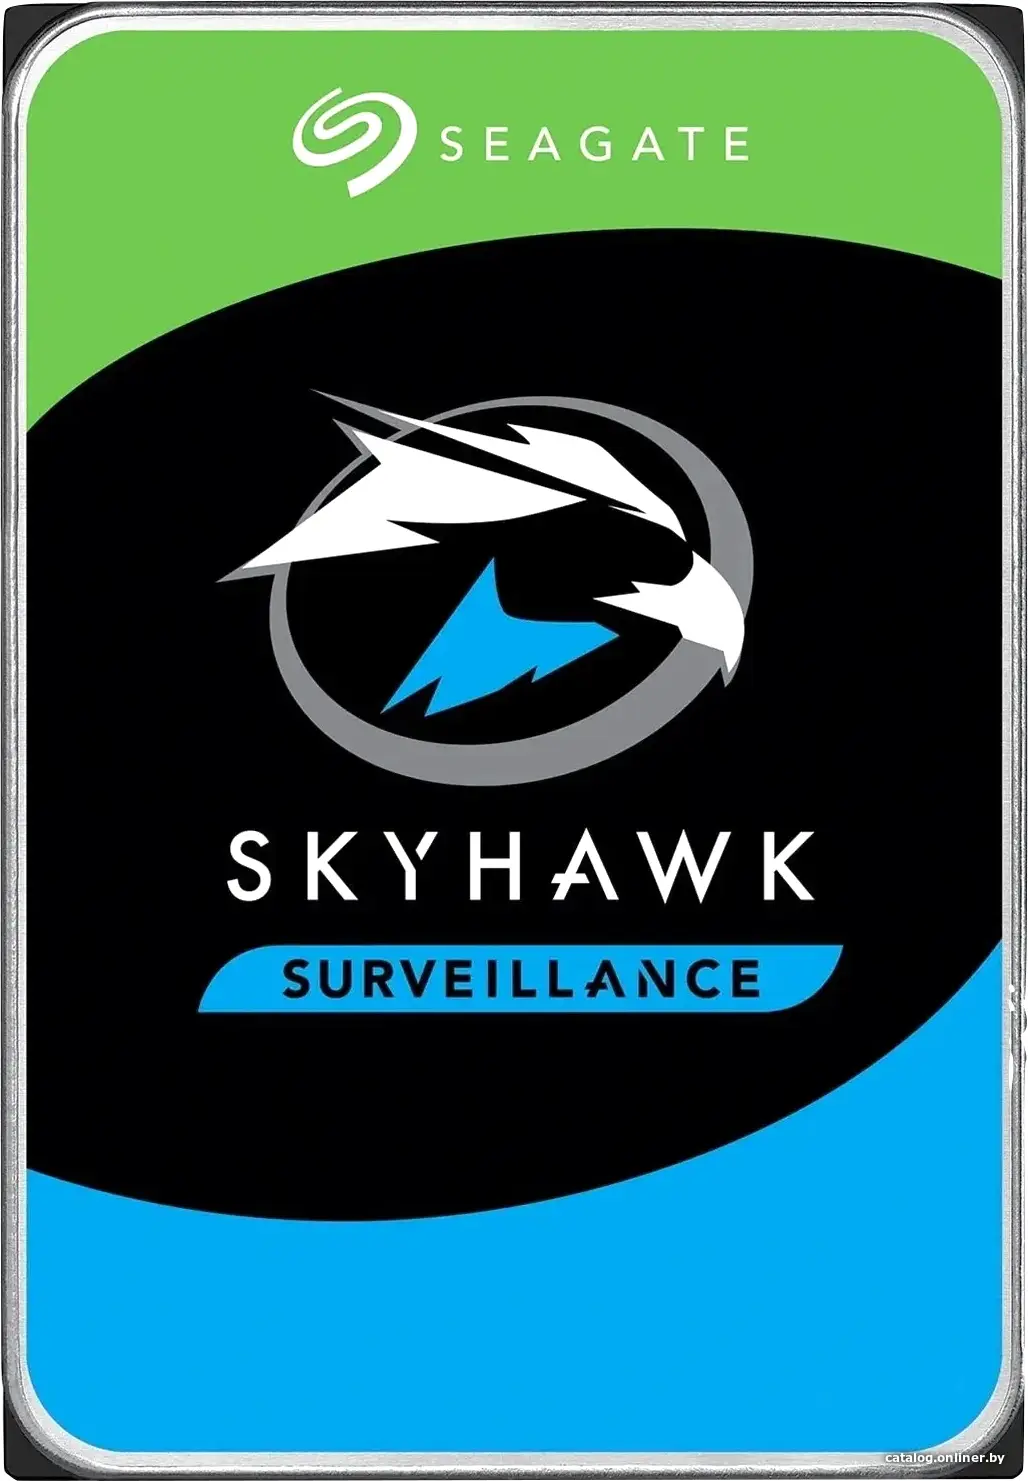 Купить Жесткий диск 6Tb Seagate Skyhawk Guardian Surveillance ST6000VX001, цена, опт и розница